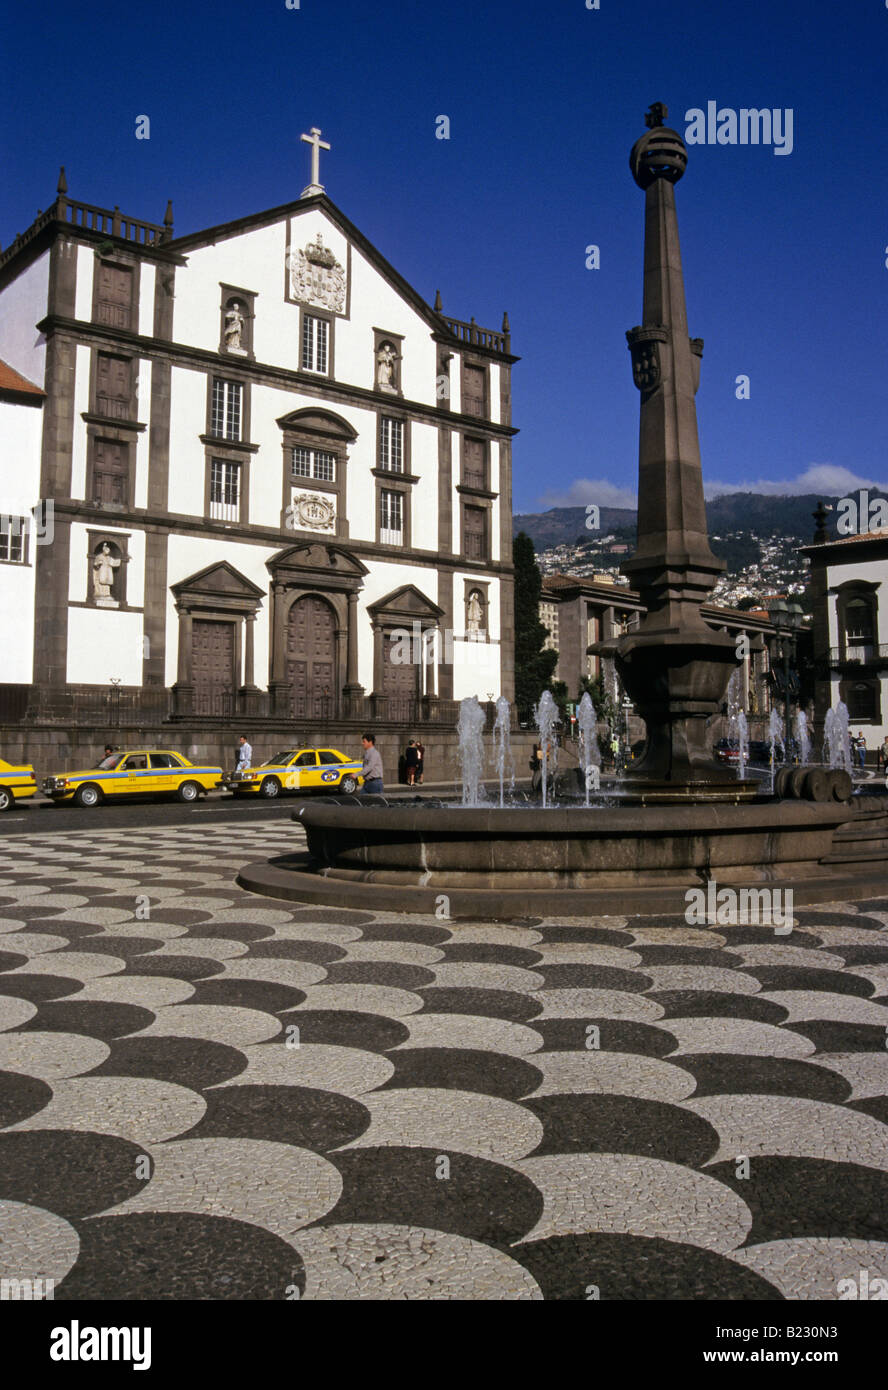 File:Jogos tradicionais - senhora ou macaca, Escola da Ladeira, Santo  António, Funchal, Madeira - IMG 20190228 175801.jpg - Wikimedia Commons